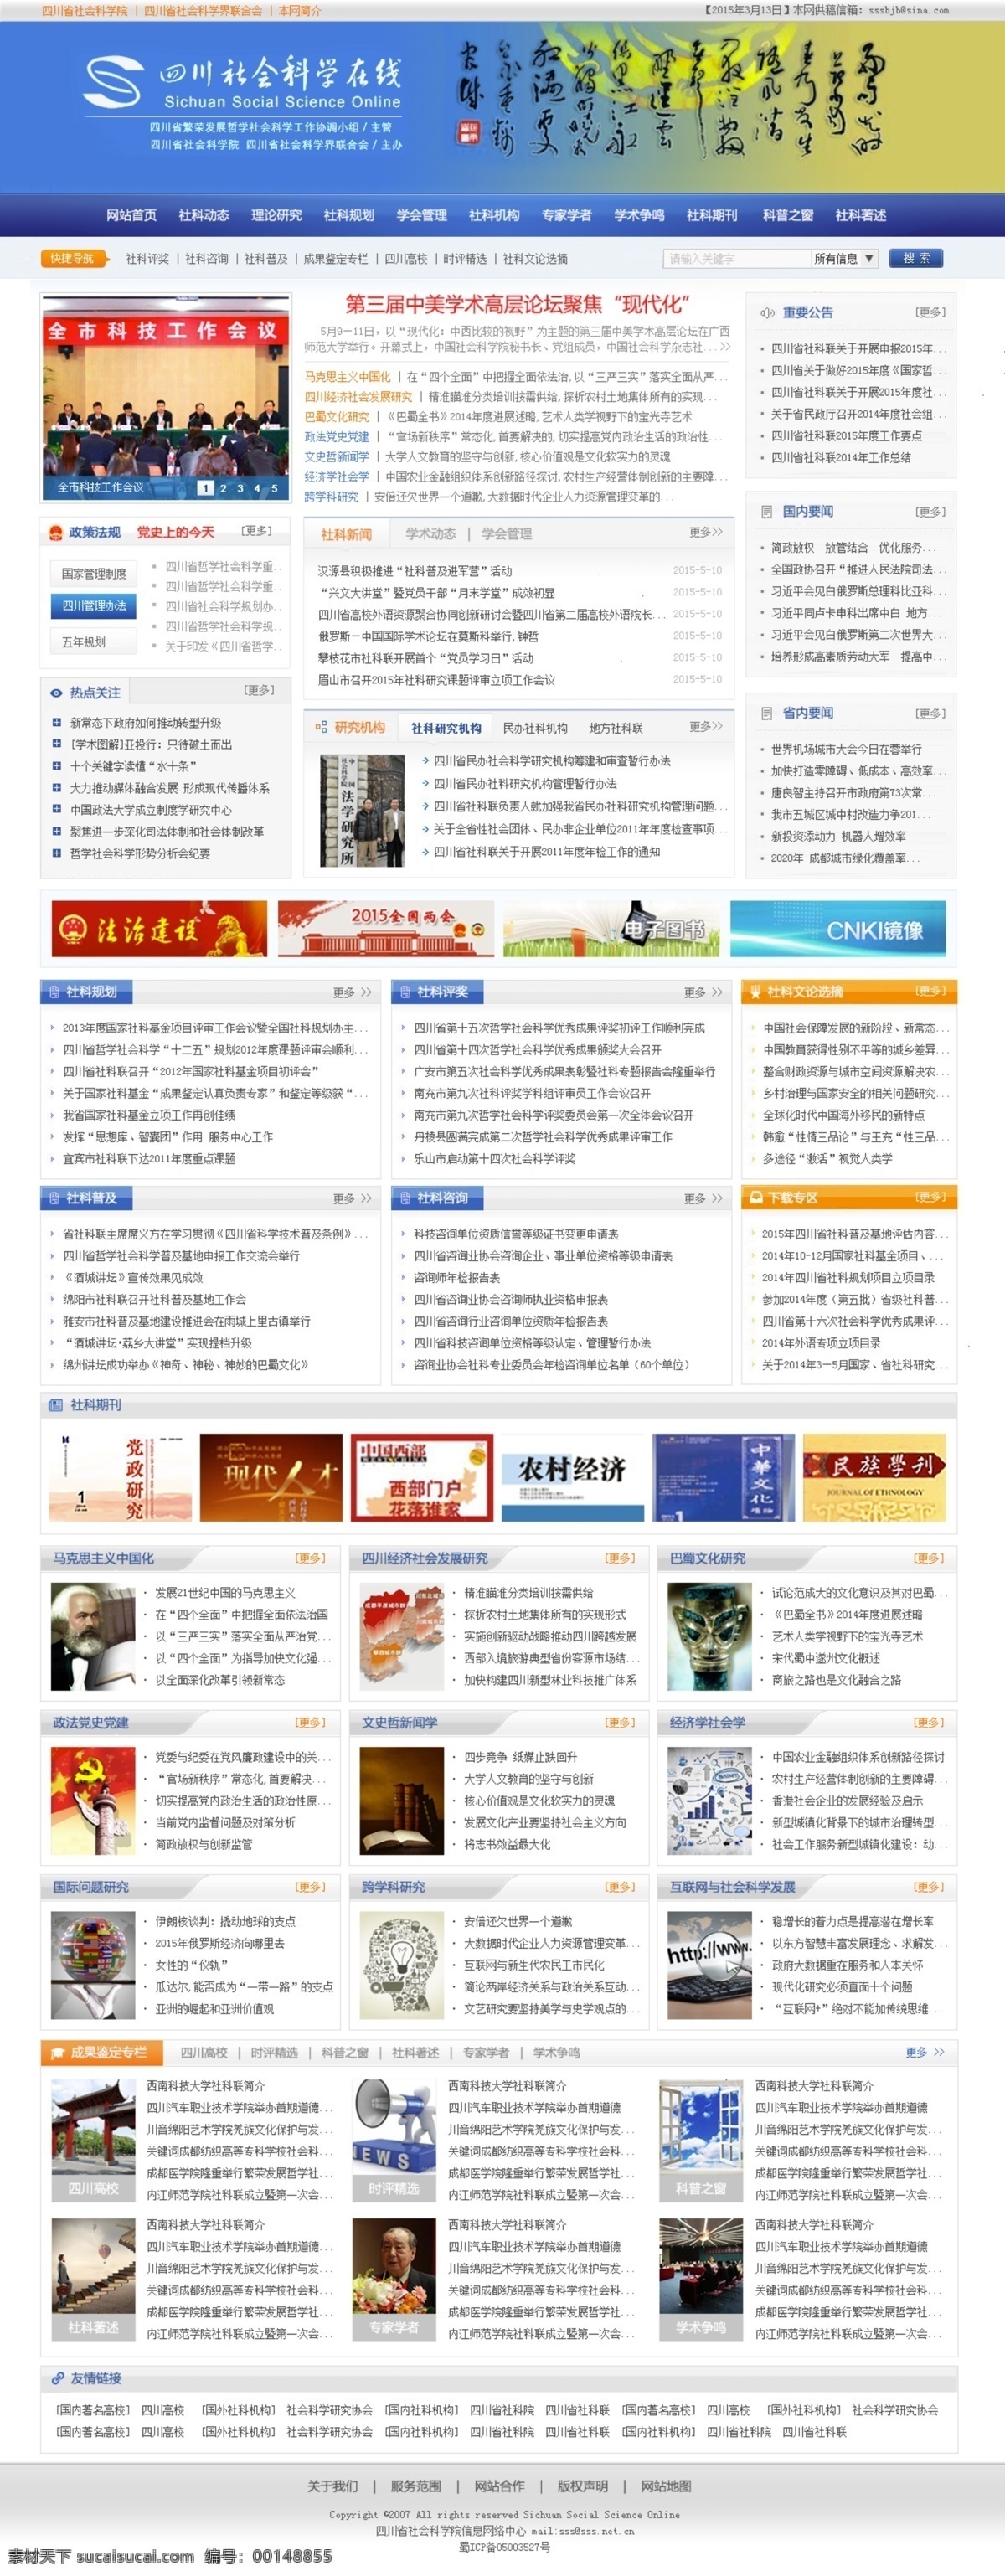 四川省 社会科学院 主页 网站首页 主页设计 机构网站 白色